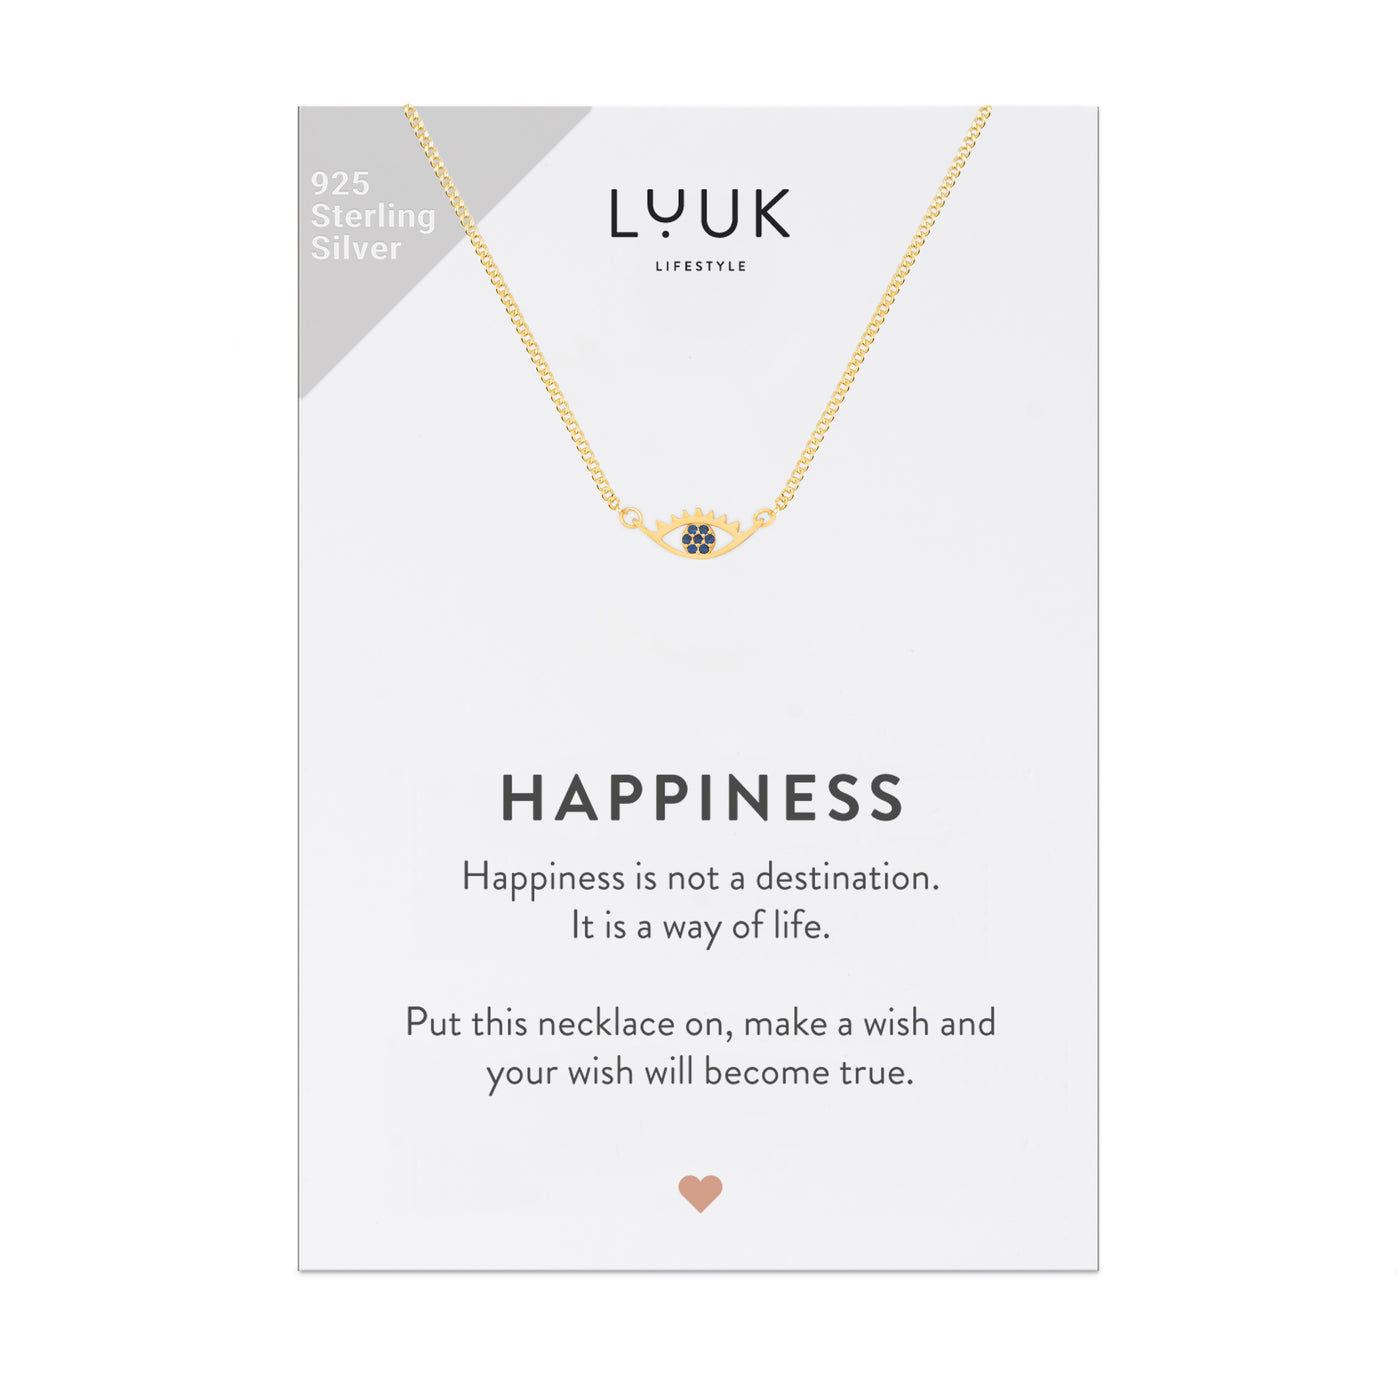 Gold Kette mit Buddha Auge Anhänger auf Happiness Spruchkarte von der Brand Luuk Lifestyle 